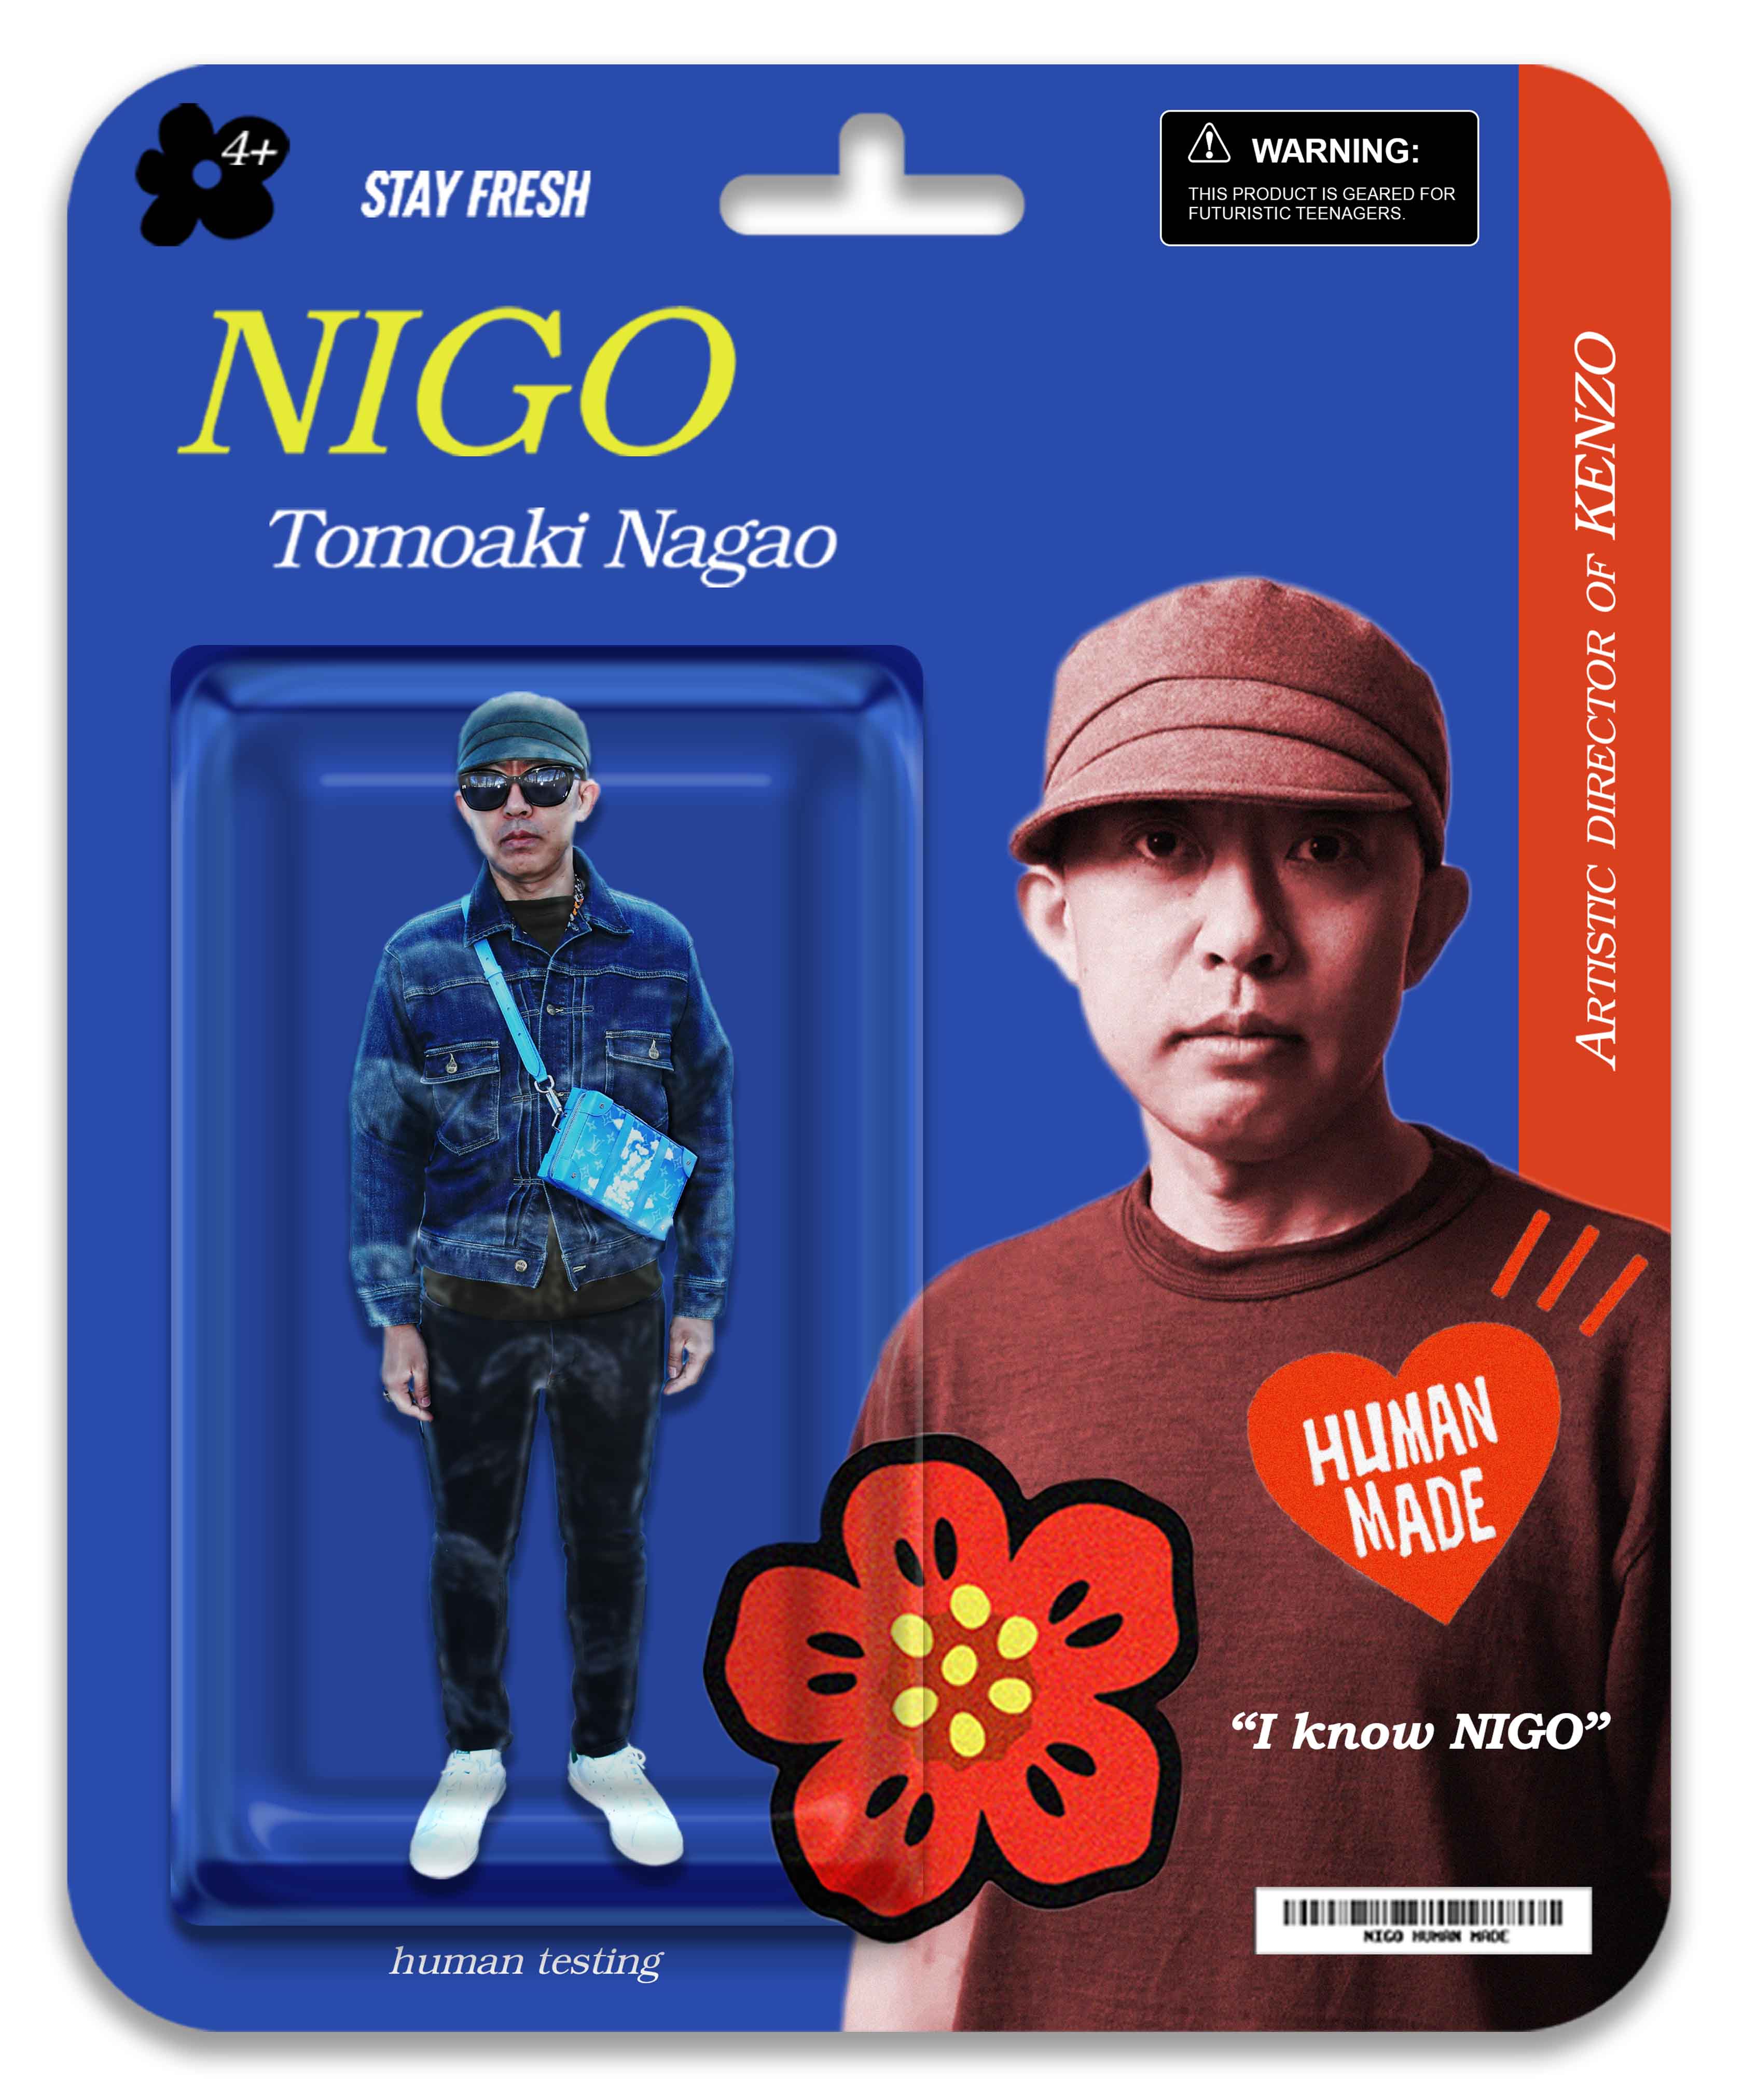 Nigo's New Album I Know NIGO! Is A Cultural Hidden Gem - Review 